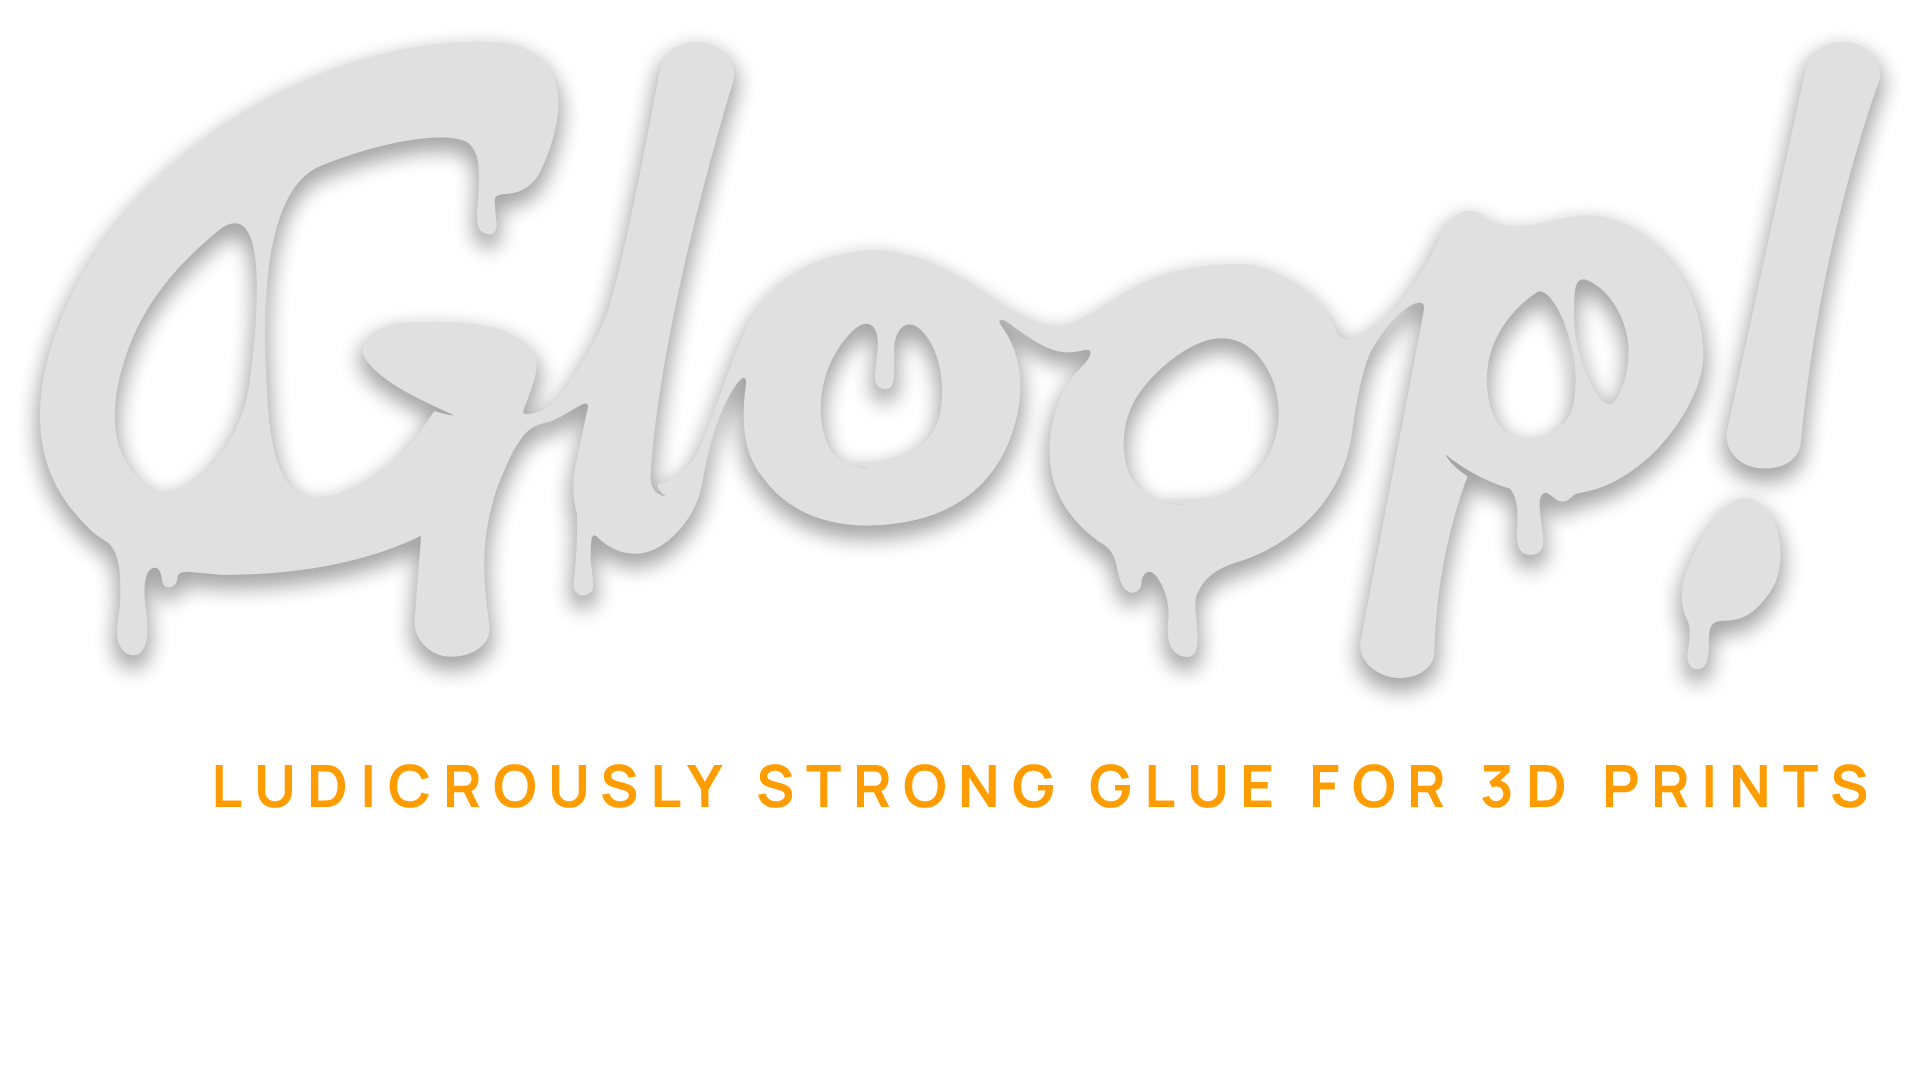 PLA Gloop! — 3D Gloop!